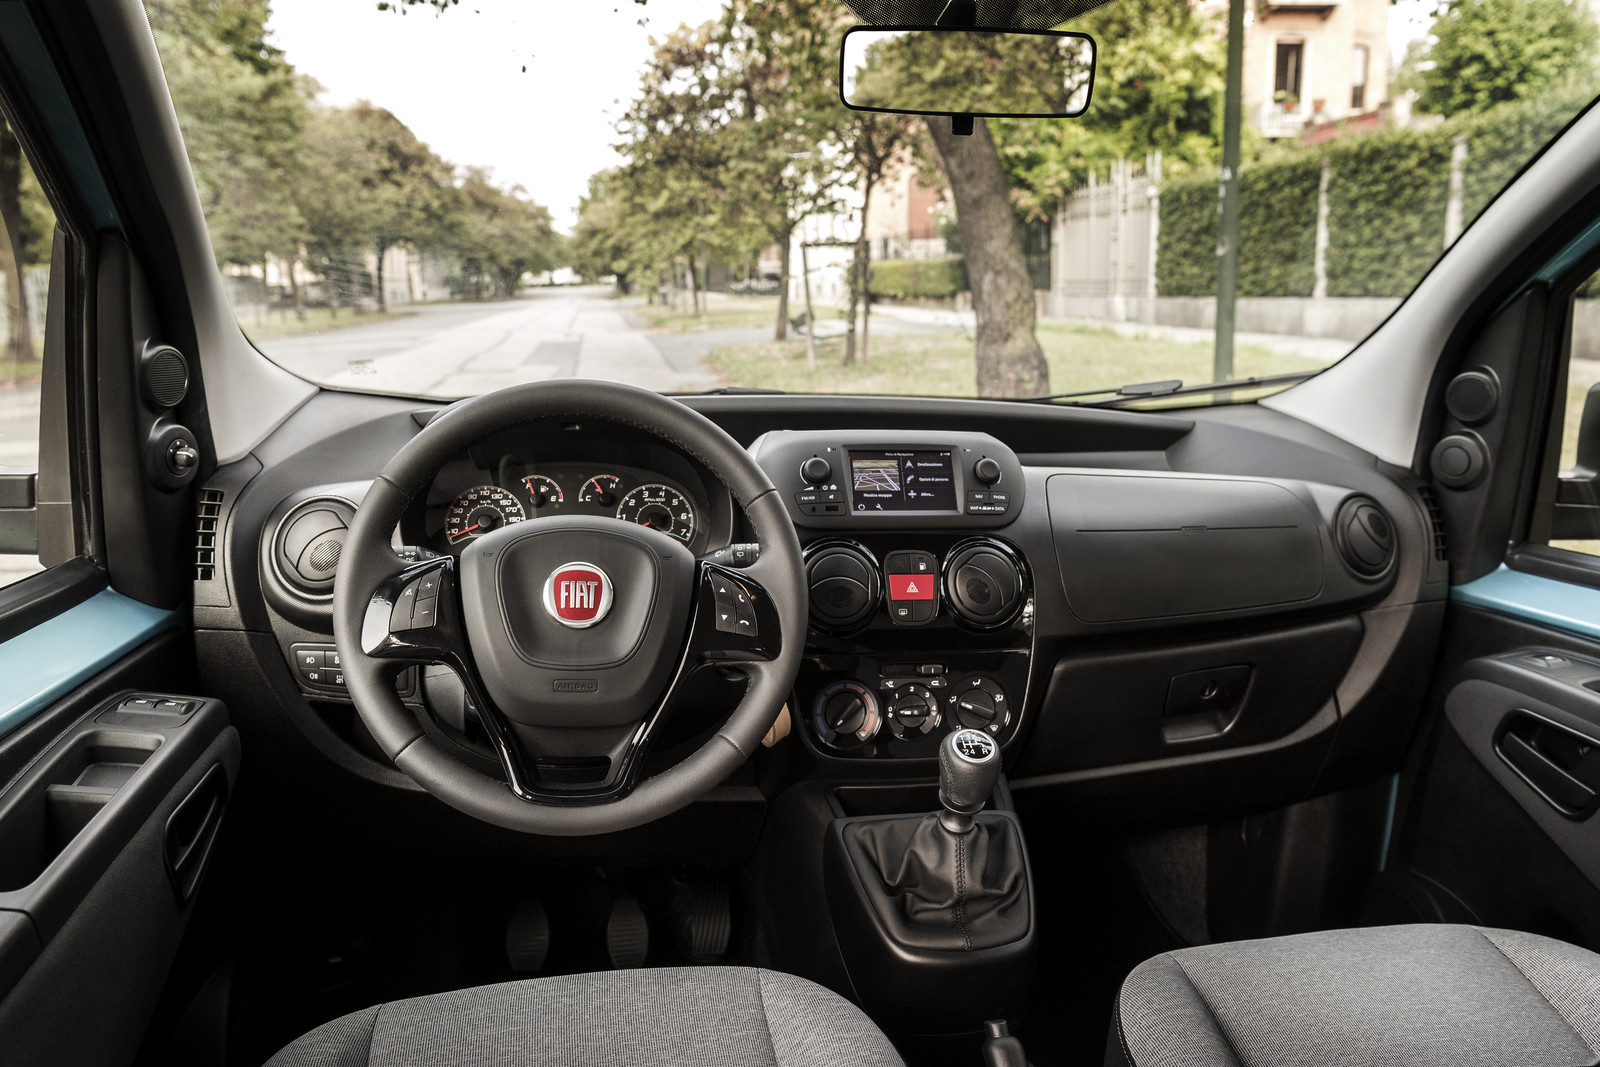 Fiat Qubo 2017: Más tecnología a bordo y motores puestos al día, desde 9.130 euros